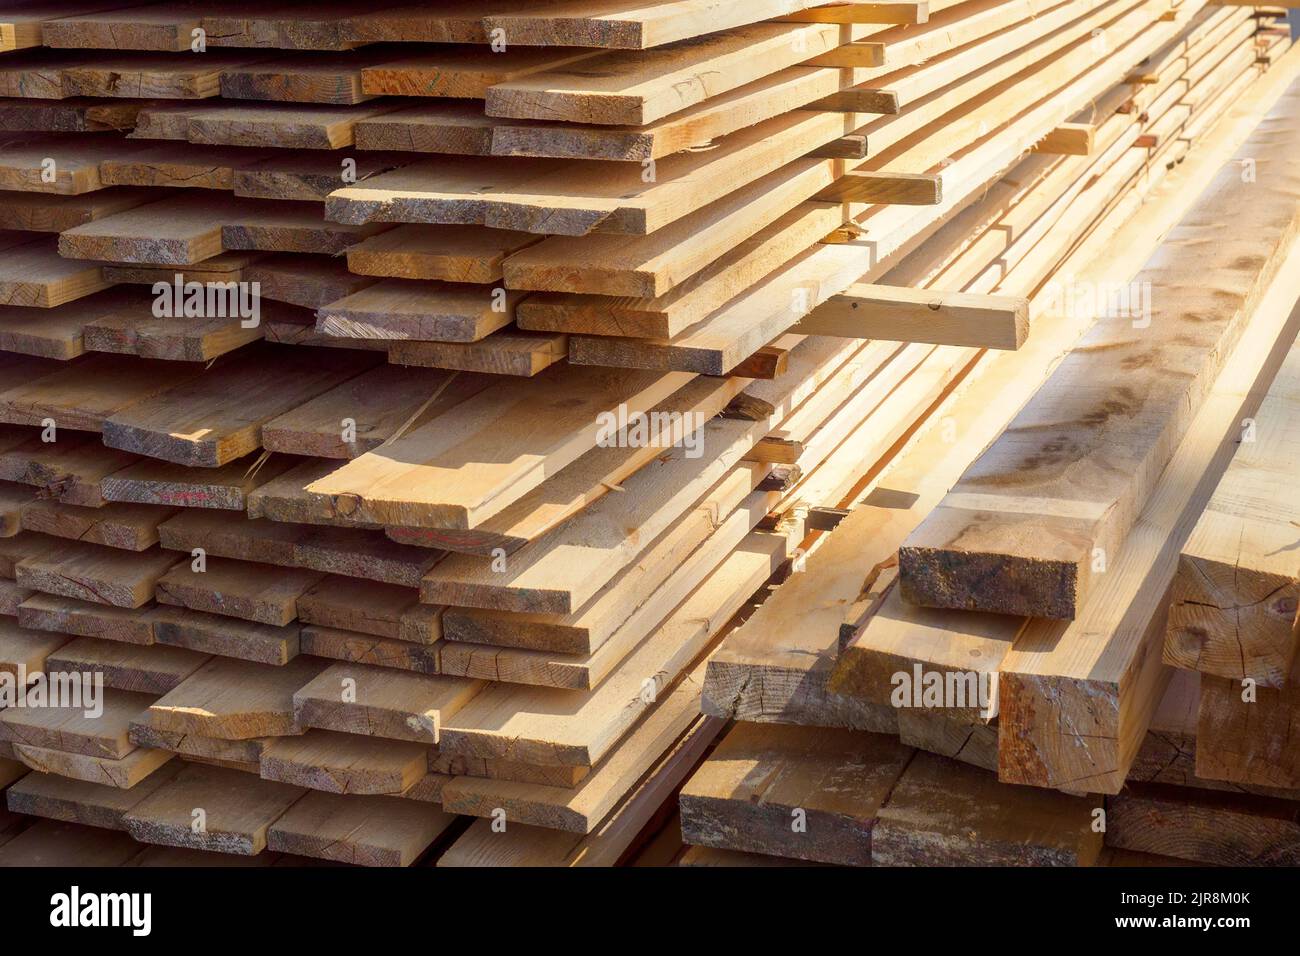 Holzbretter werden in einem Sägewerk oder einer Schreinerei gestapelt. Sägen Trocknen und Vermarktung von Holz. Industrieller Hintergrund Stockfoto